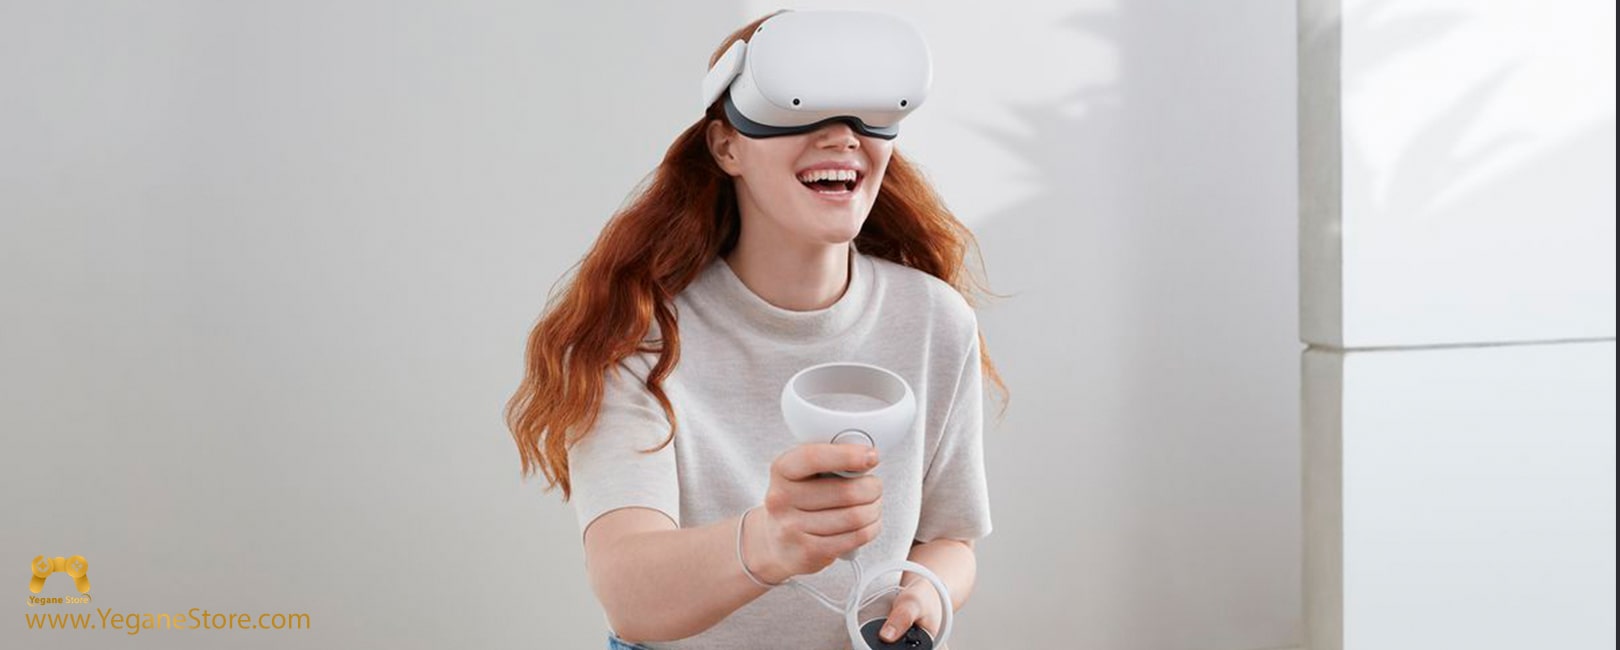 واقعیت مجازی Oculus Quest